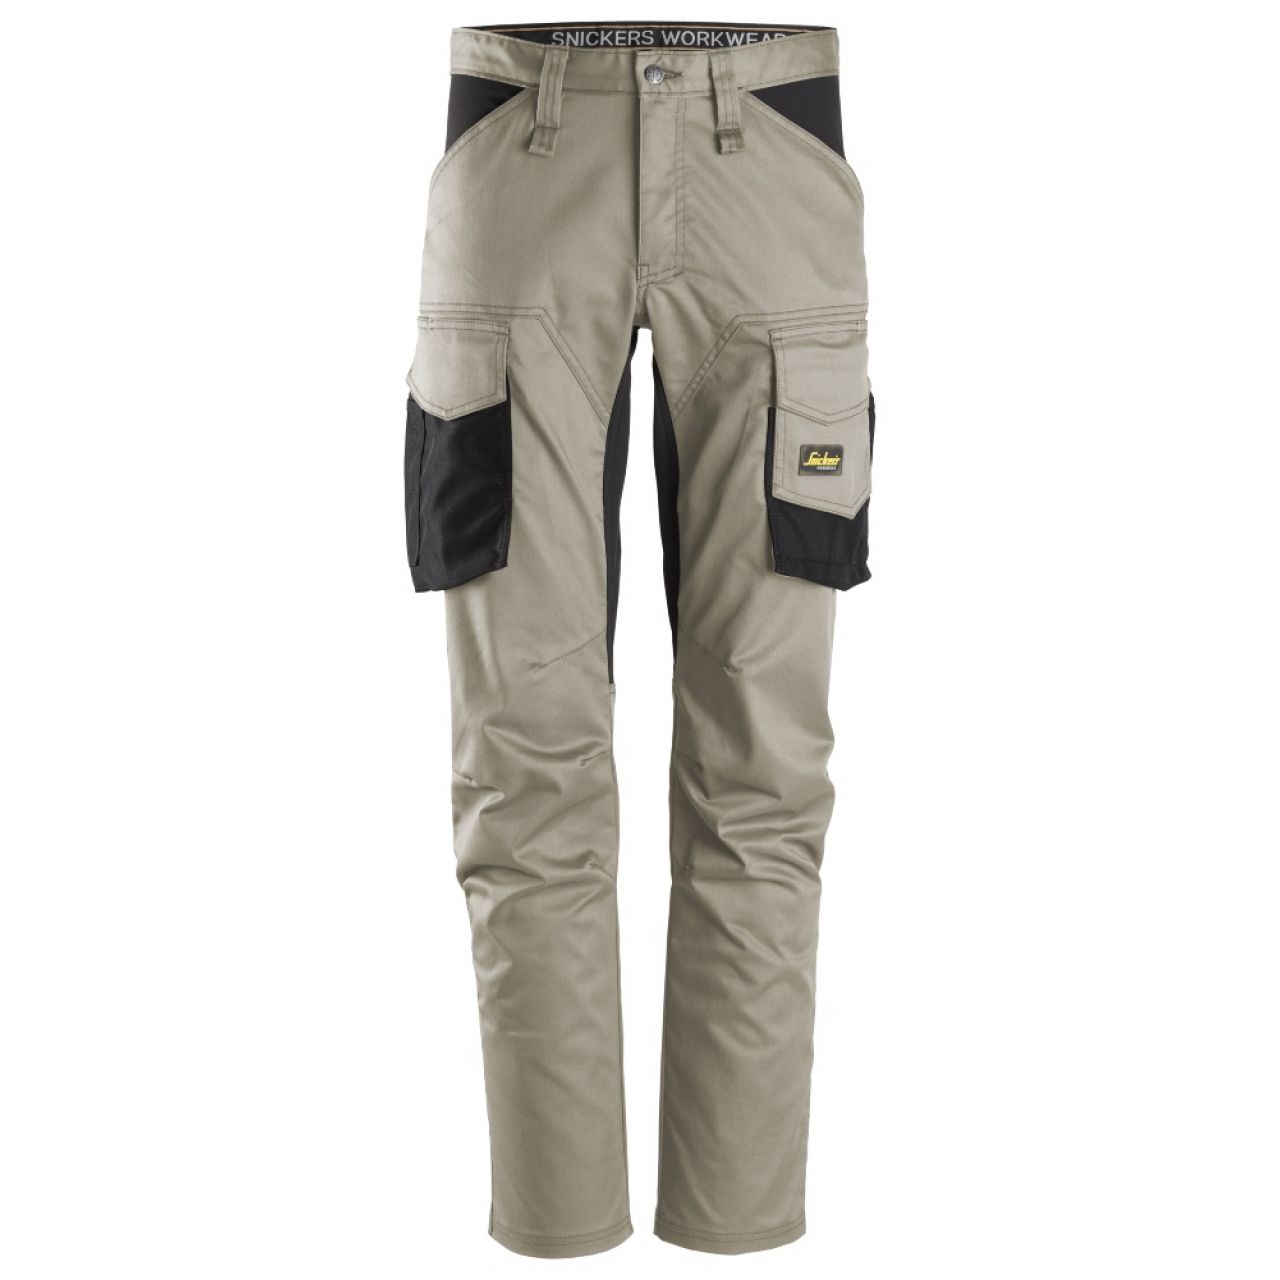 6803 Pantalones largos de trabajo elásticos sin bolsillos para las rodilleras AllroundWork beige-negro talla 100